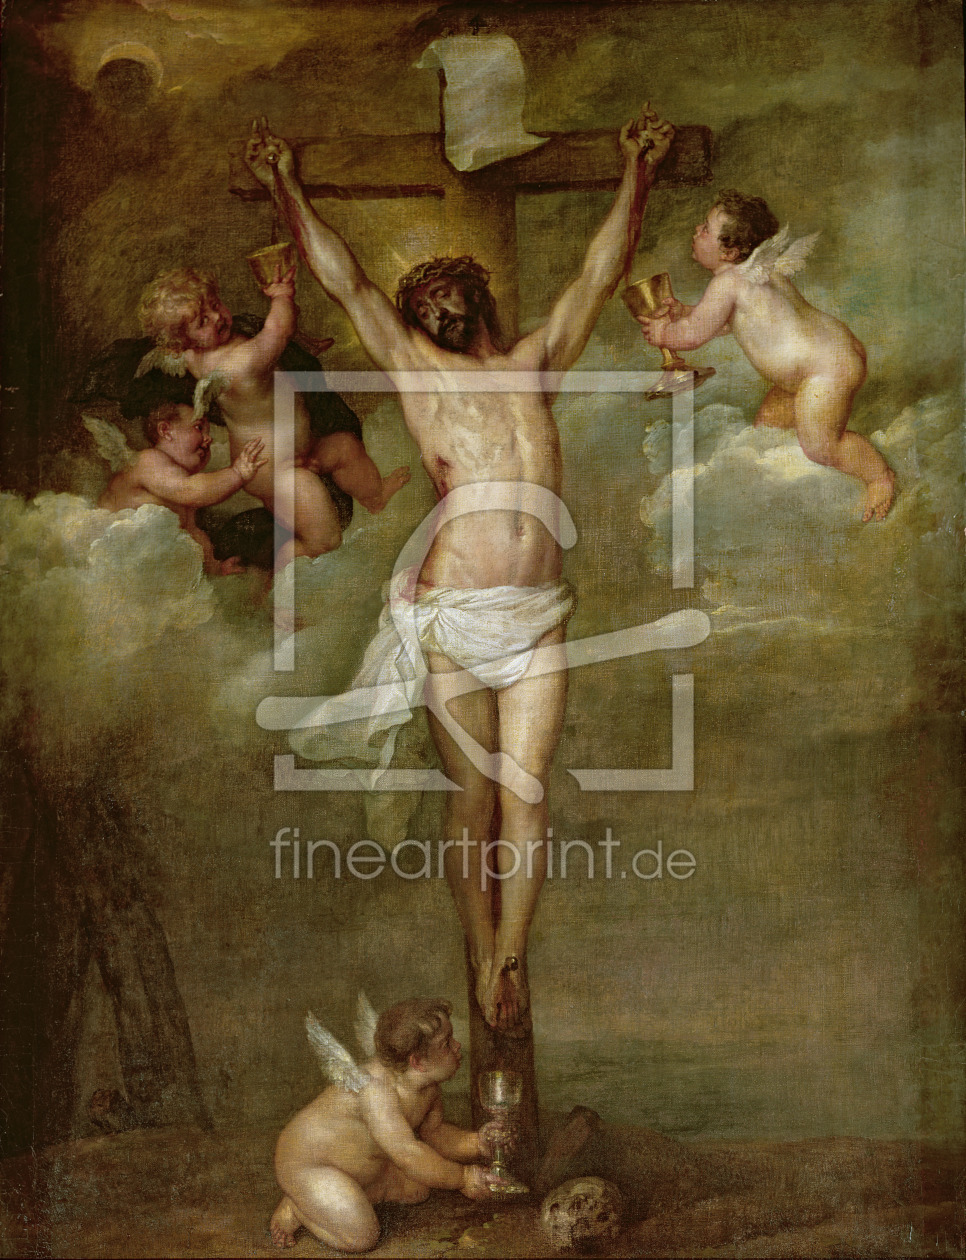 Bild-Nr.: 31001180 Christ attended by angels holding chalices erstellt von Rubens, Peter Paul